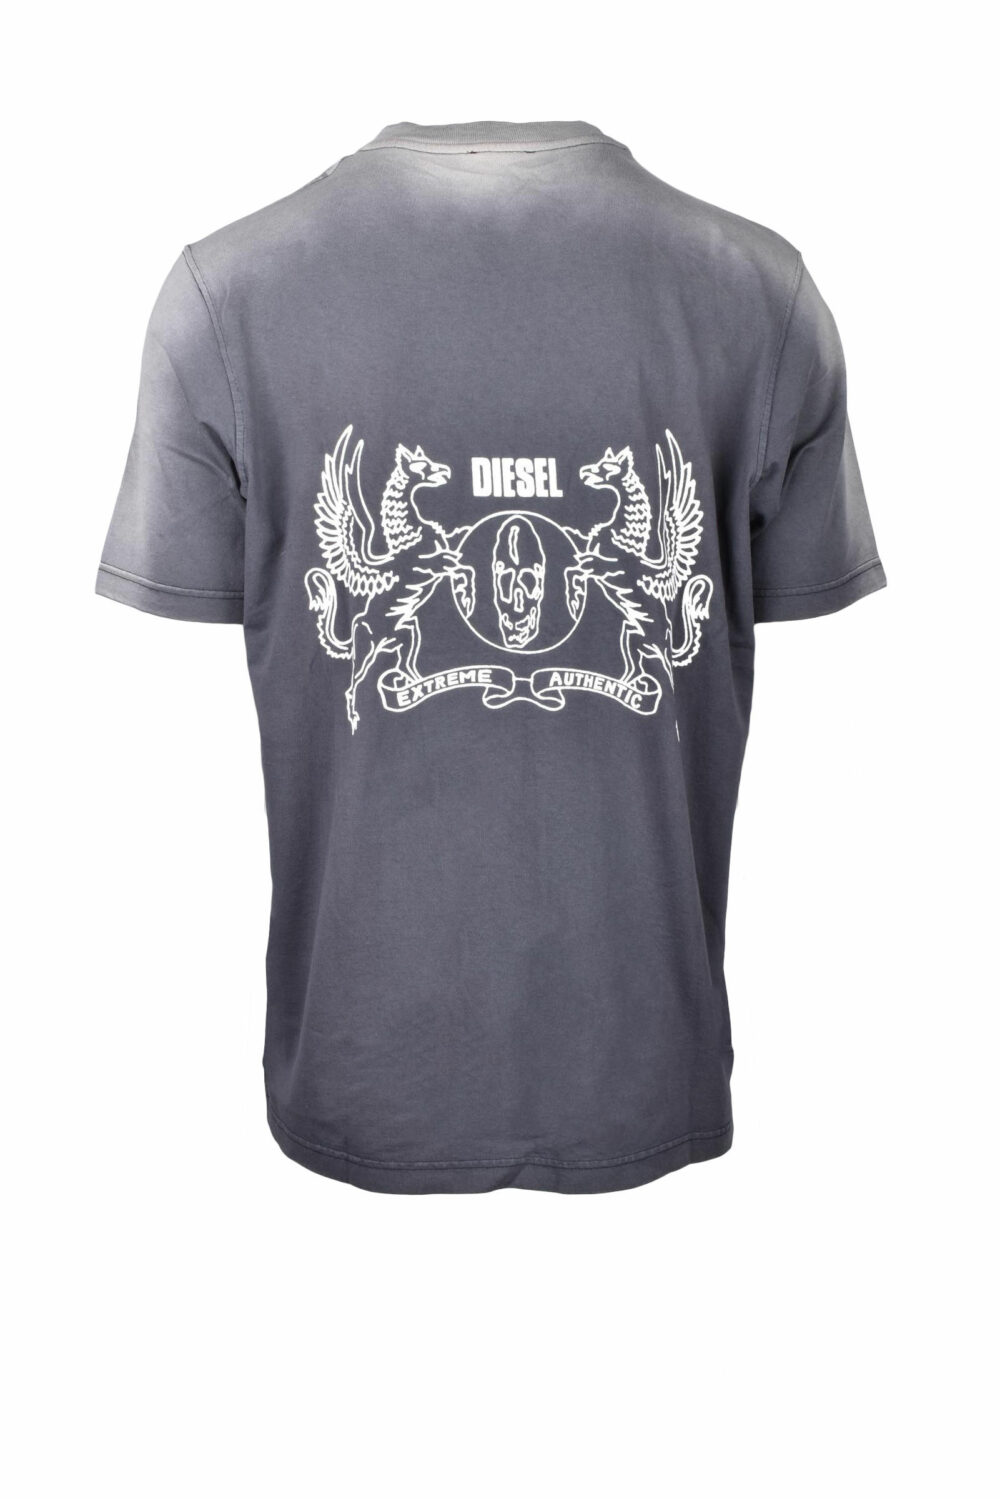 T-shirt Diesel Antracite - Foto 2